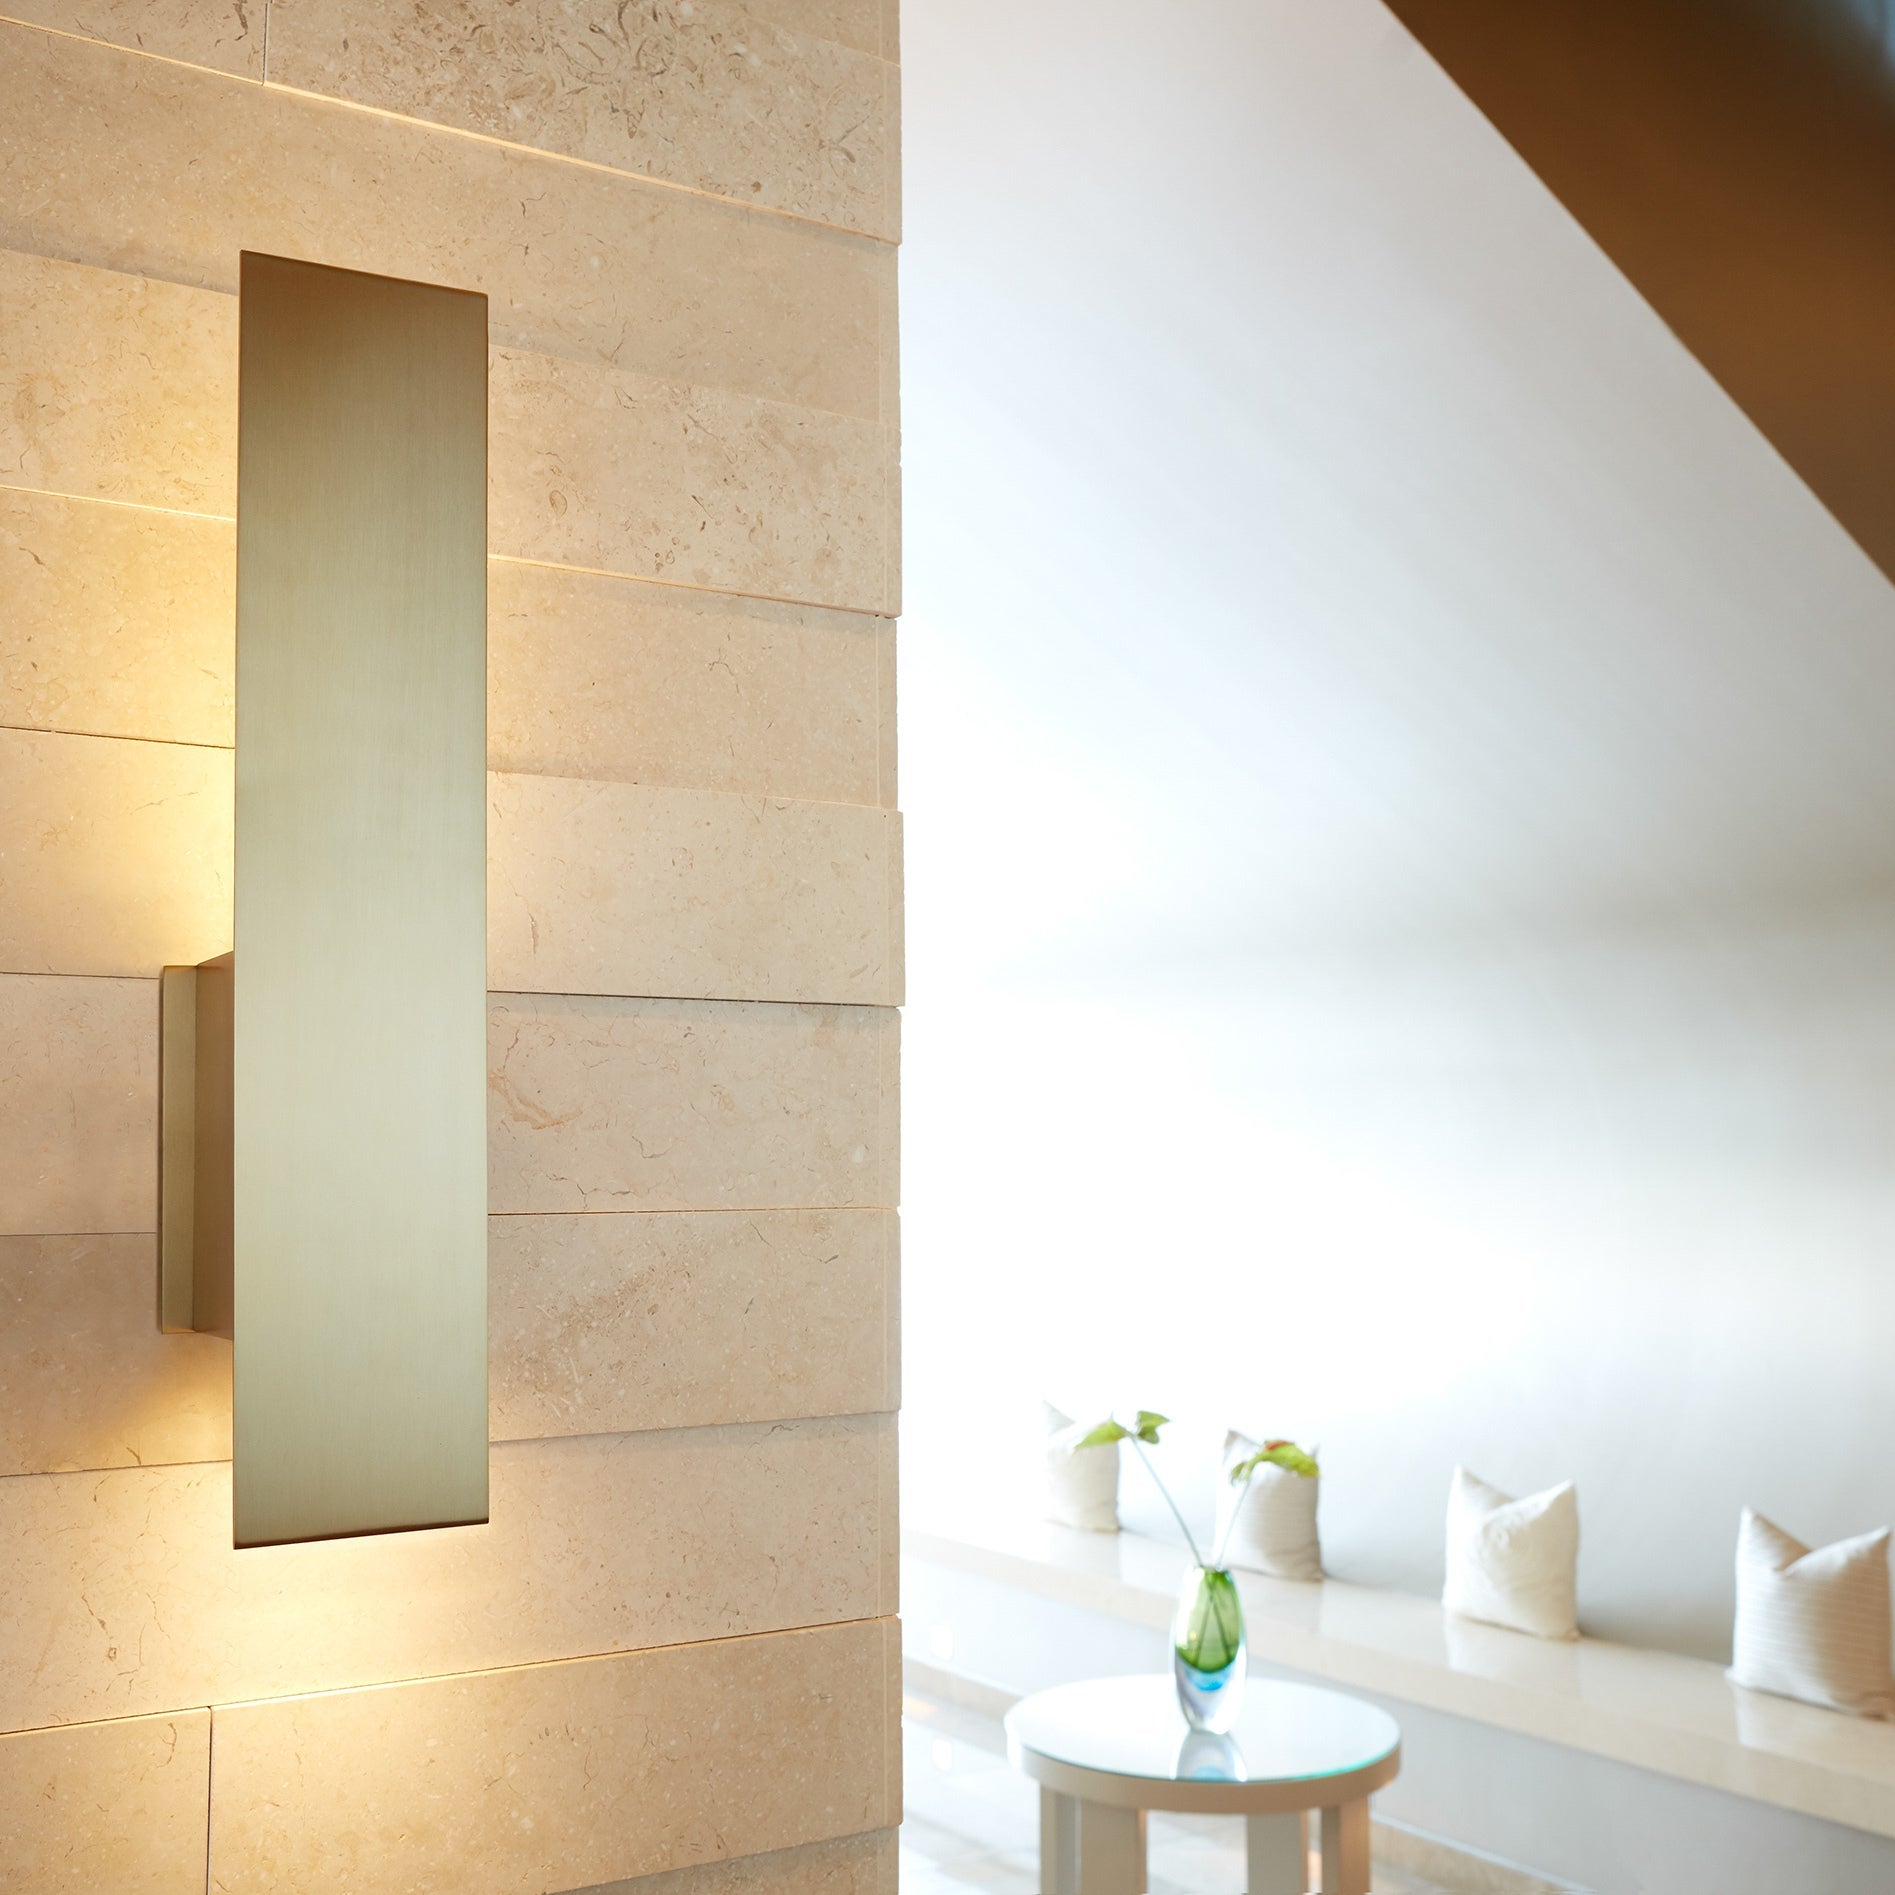 Oxygen REFLEX 3-504-40 Modern Wall Sconce Light Fixture, ADA Compliant, Damp Rated - Aged Brass